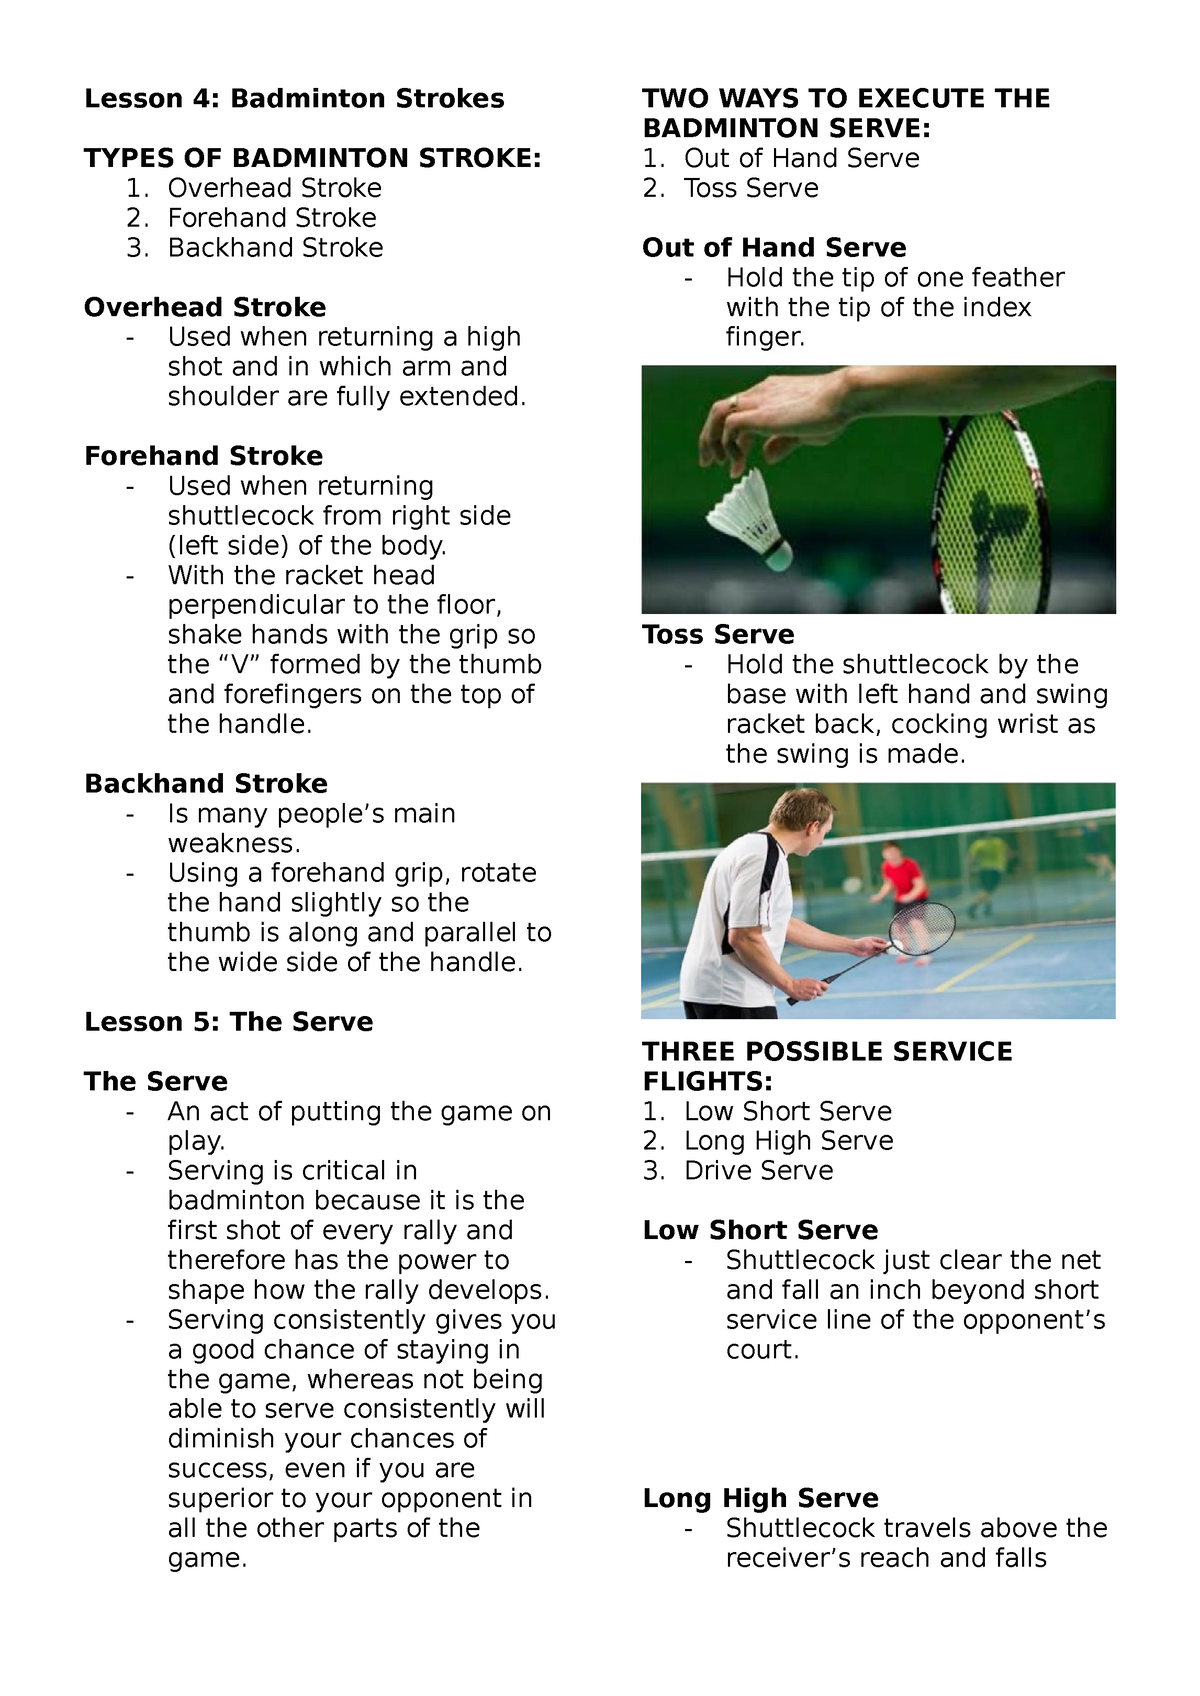 Pathfit L4-5 - lecture notes about badminton - Lesson 4: Badminton ...